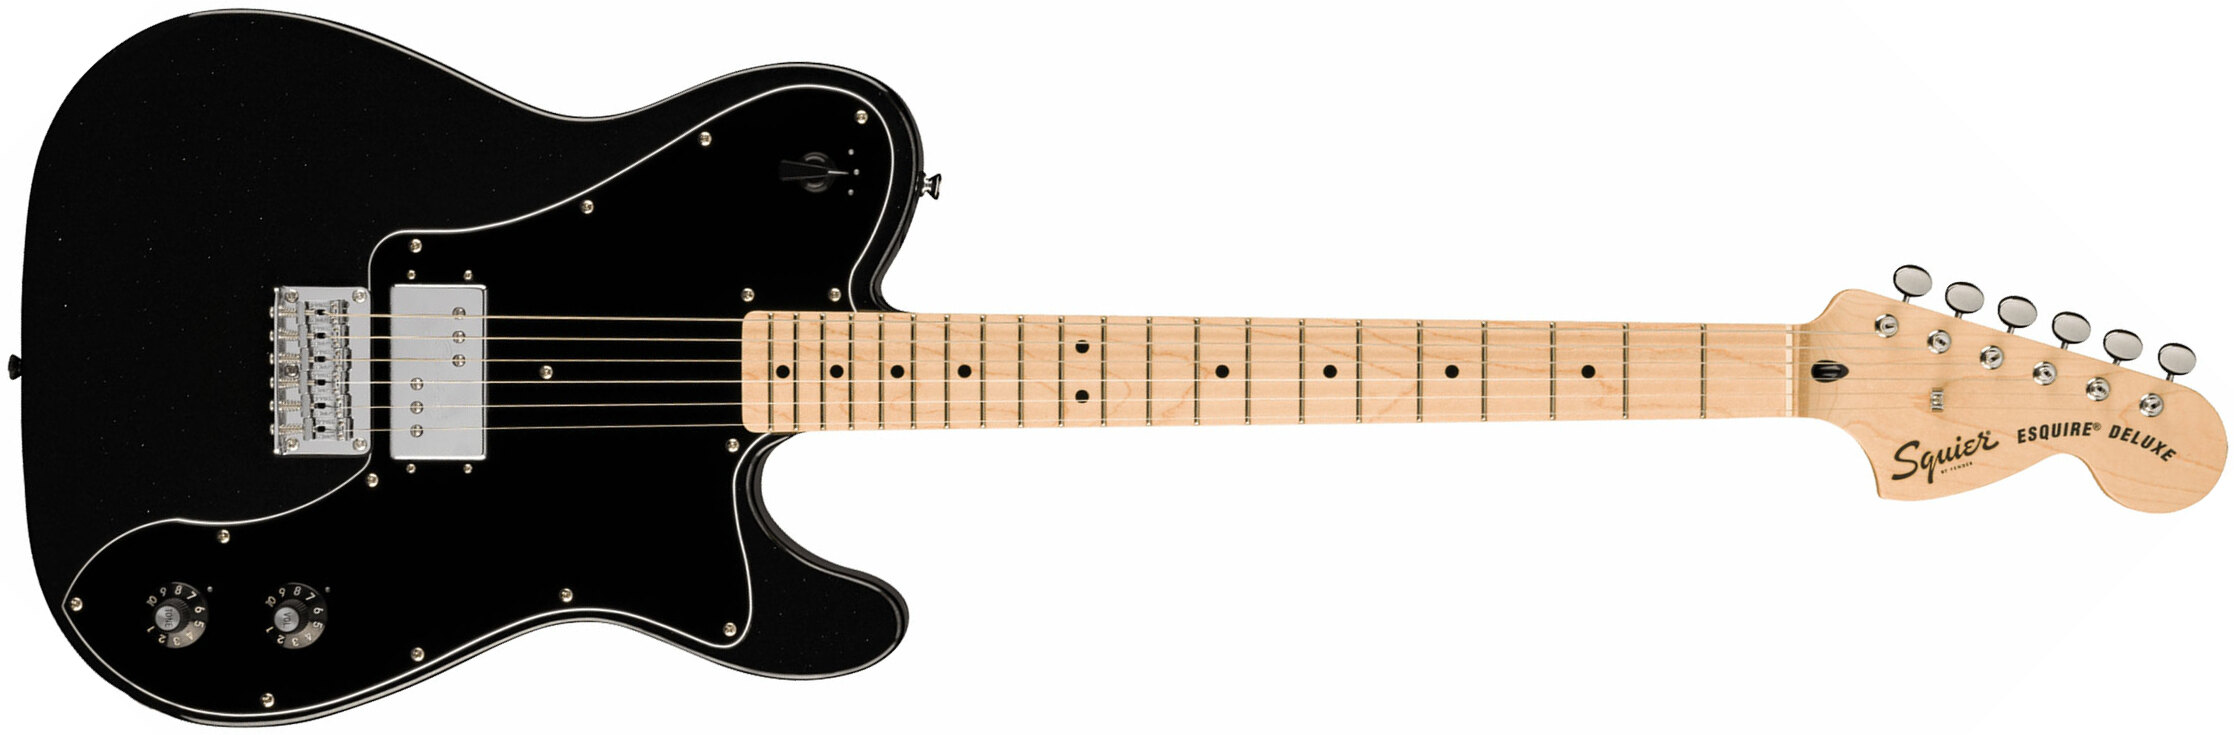 Squier Esquire Deluxe Paranormal 1h Ht Mn - Metallic Black - Elektrische gitaar in Str-vorm - Main picture